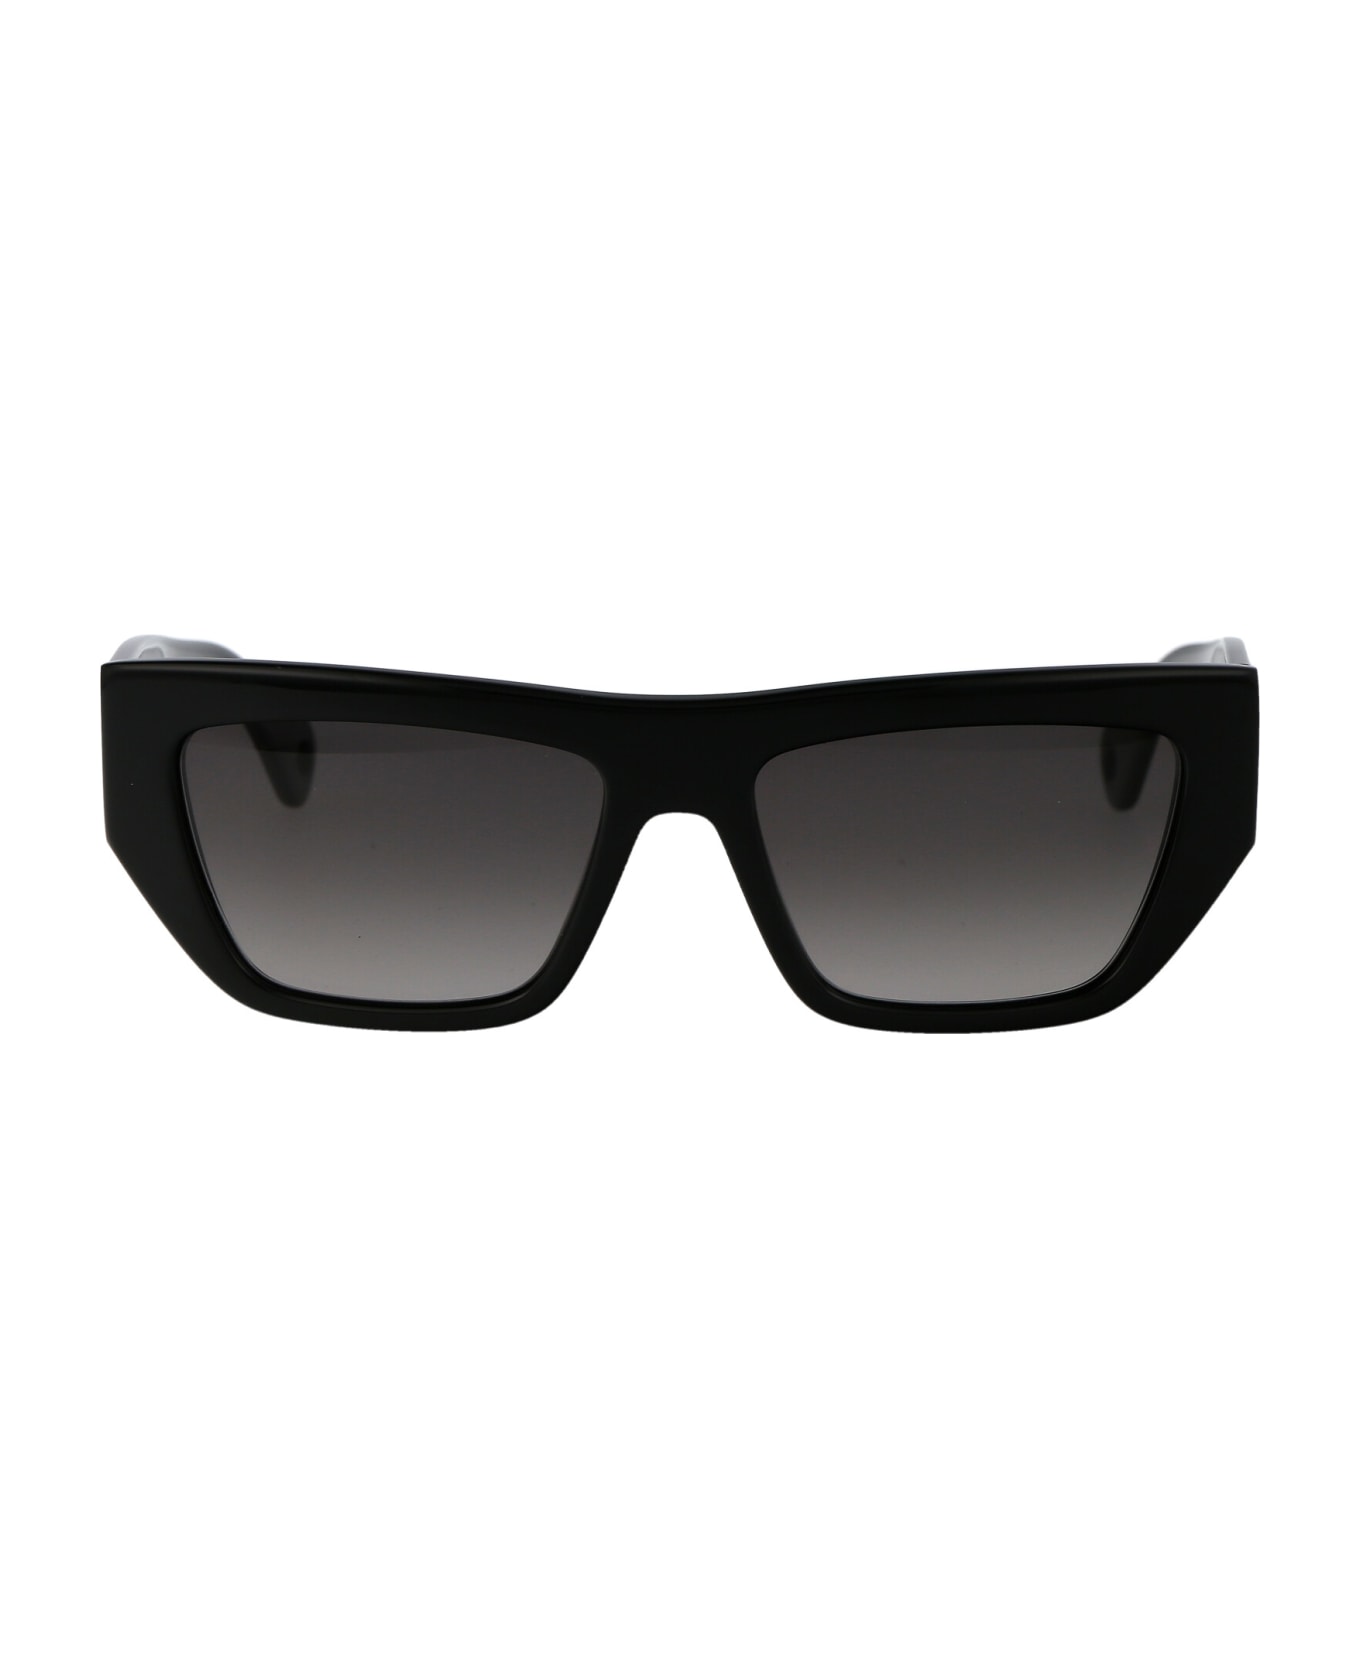 Lanvin Lnv652s Sunglasses - 001 BLACK